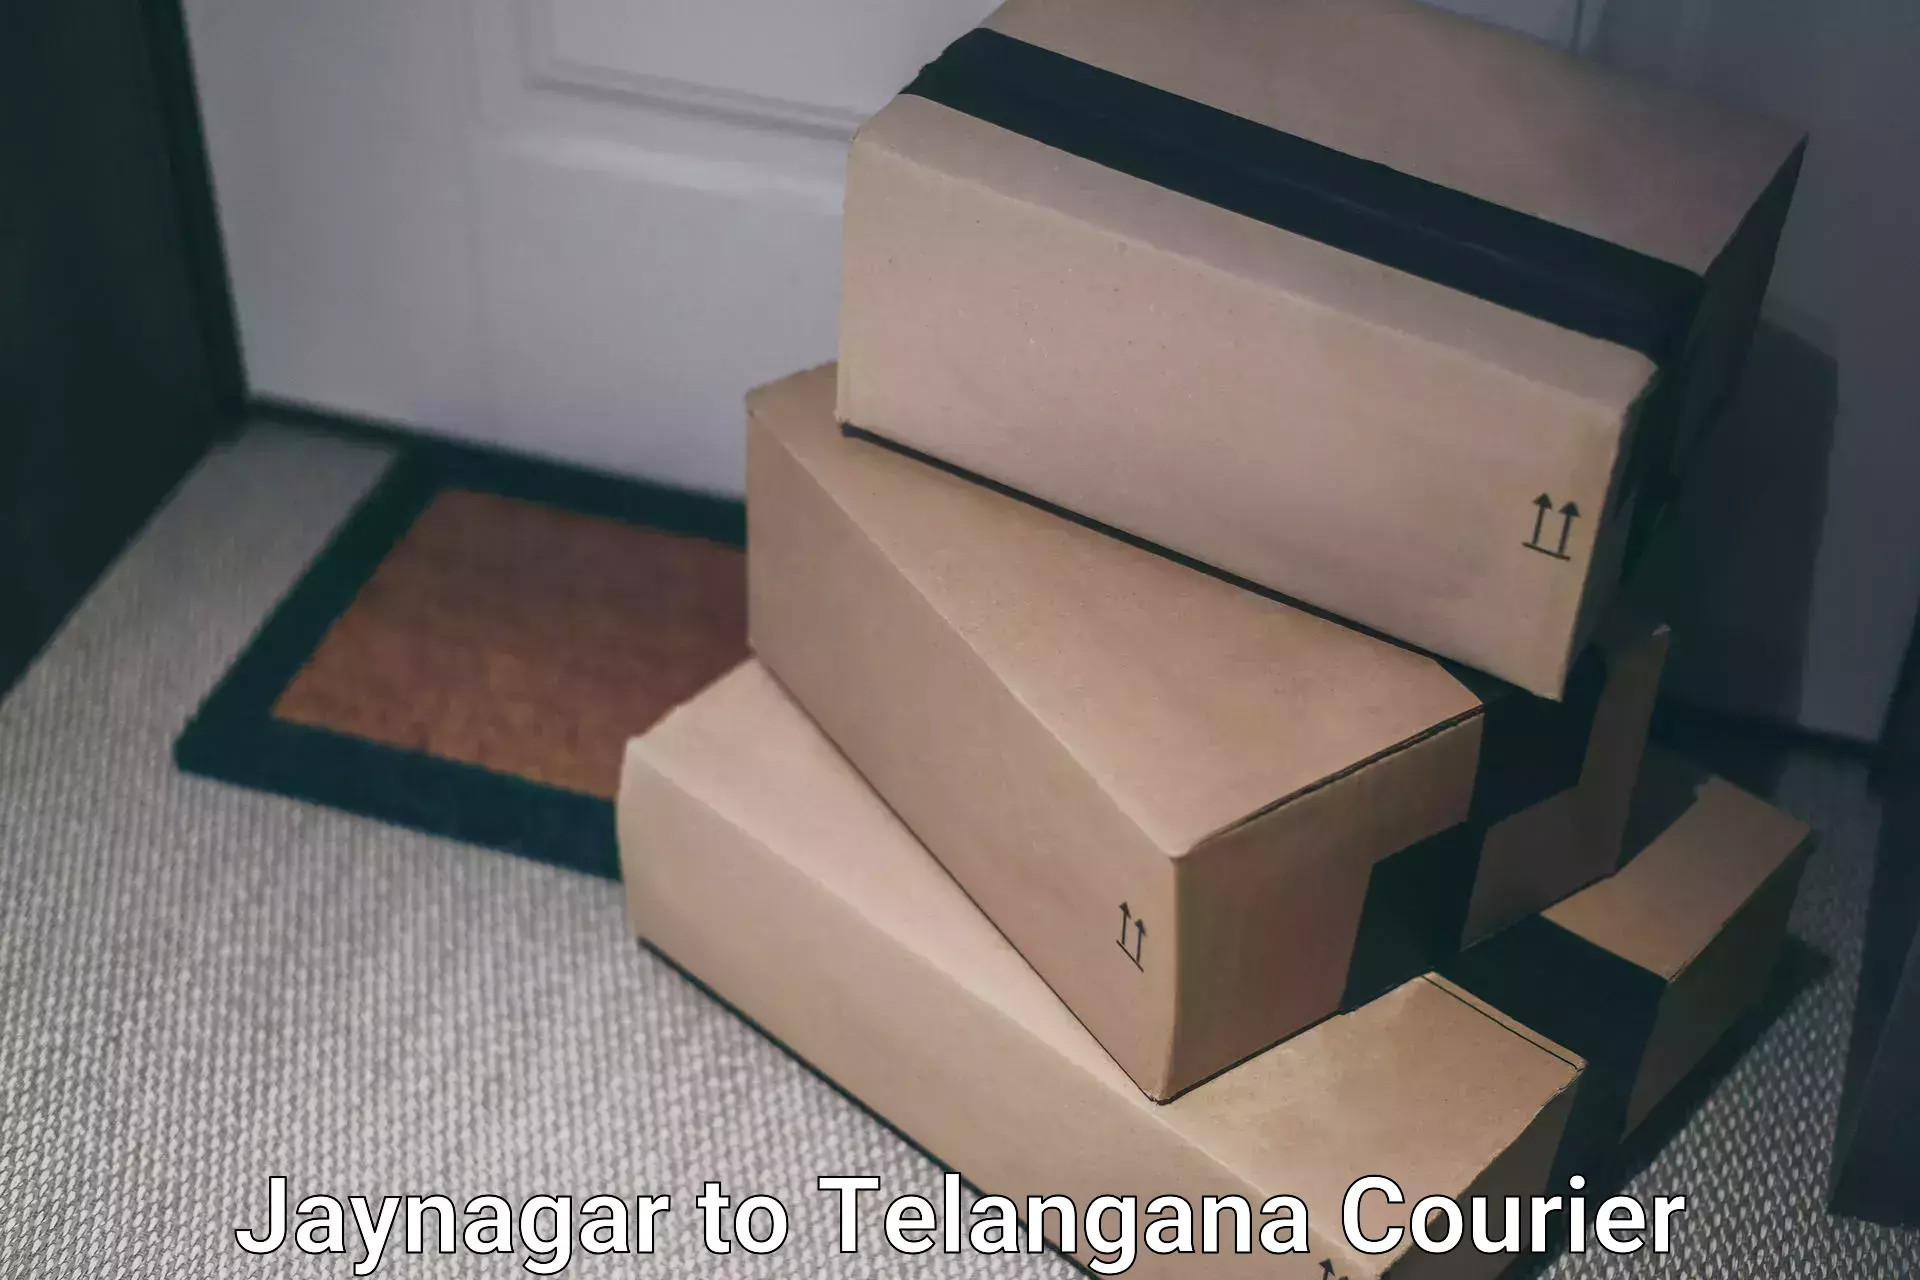 Courier service efficiency Jaynagar to Pregnapur